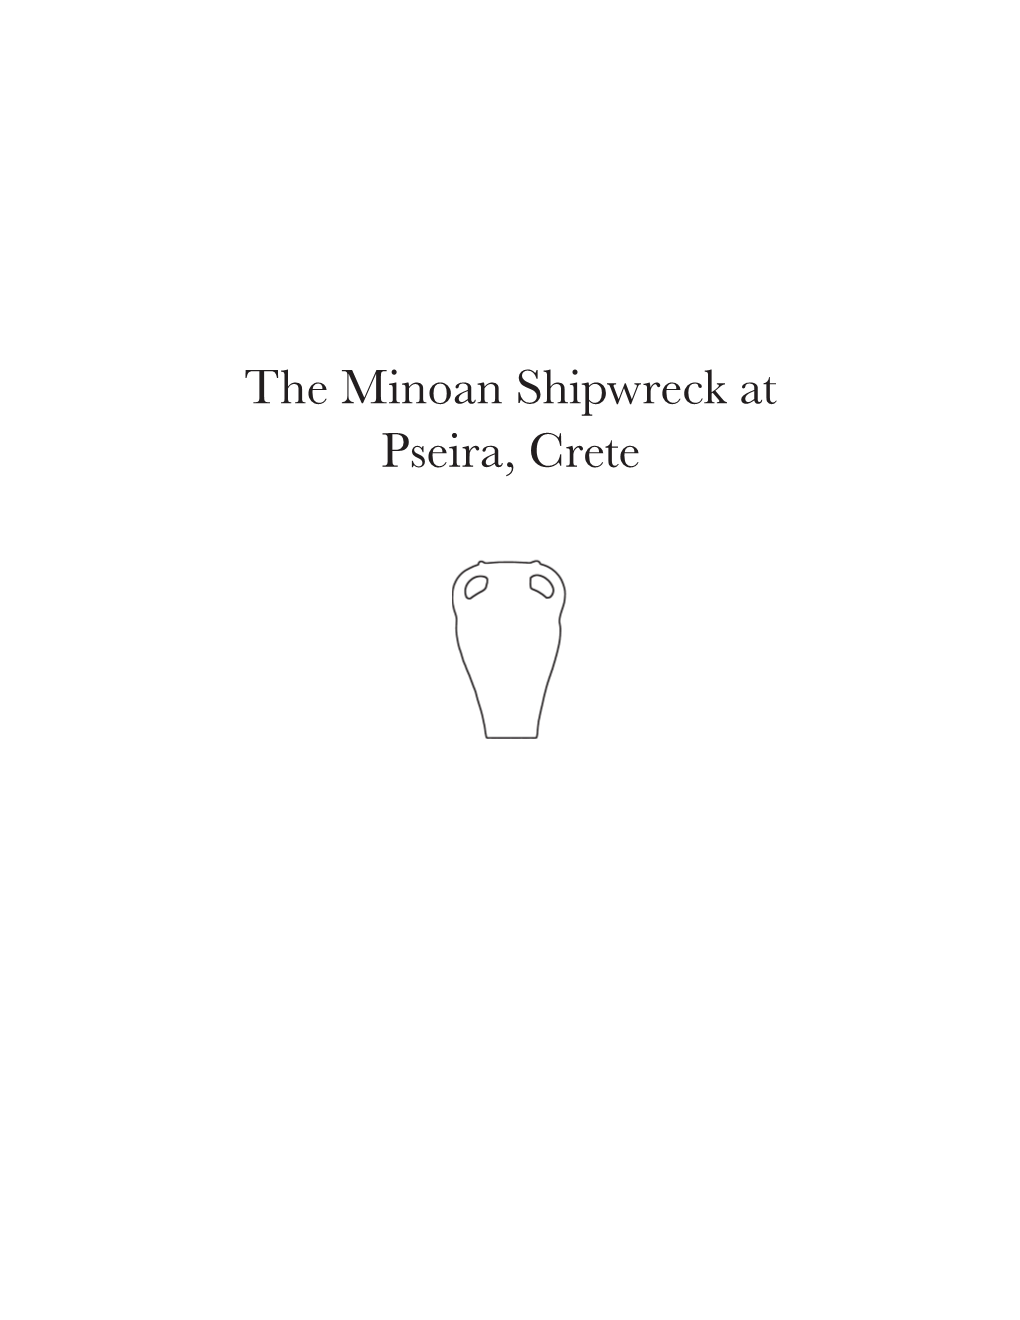 The Minoan Shipwreck at Pseira, Crete Frontispiece